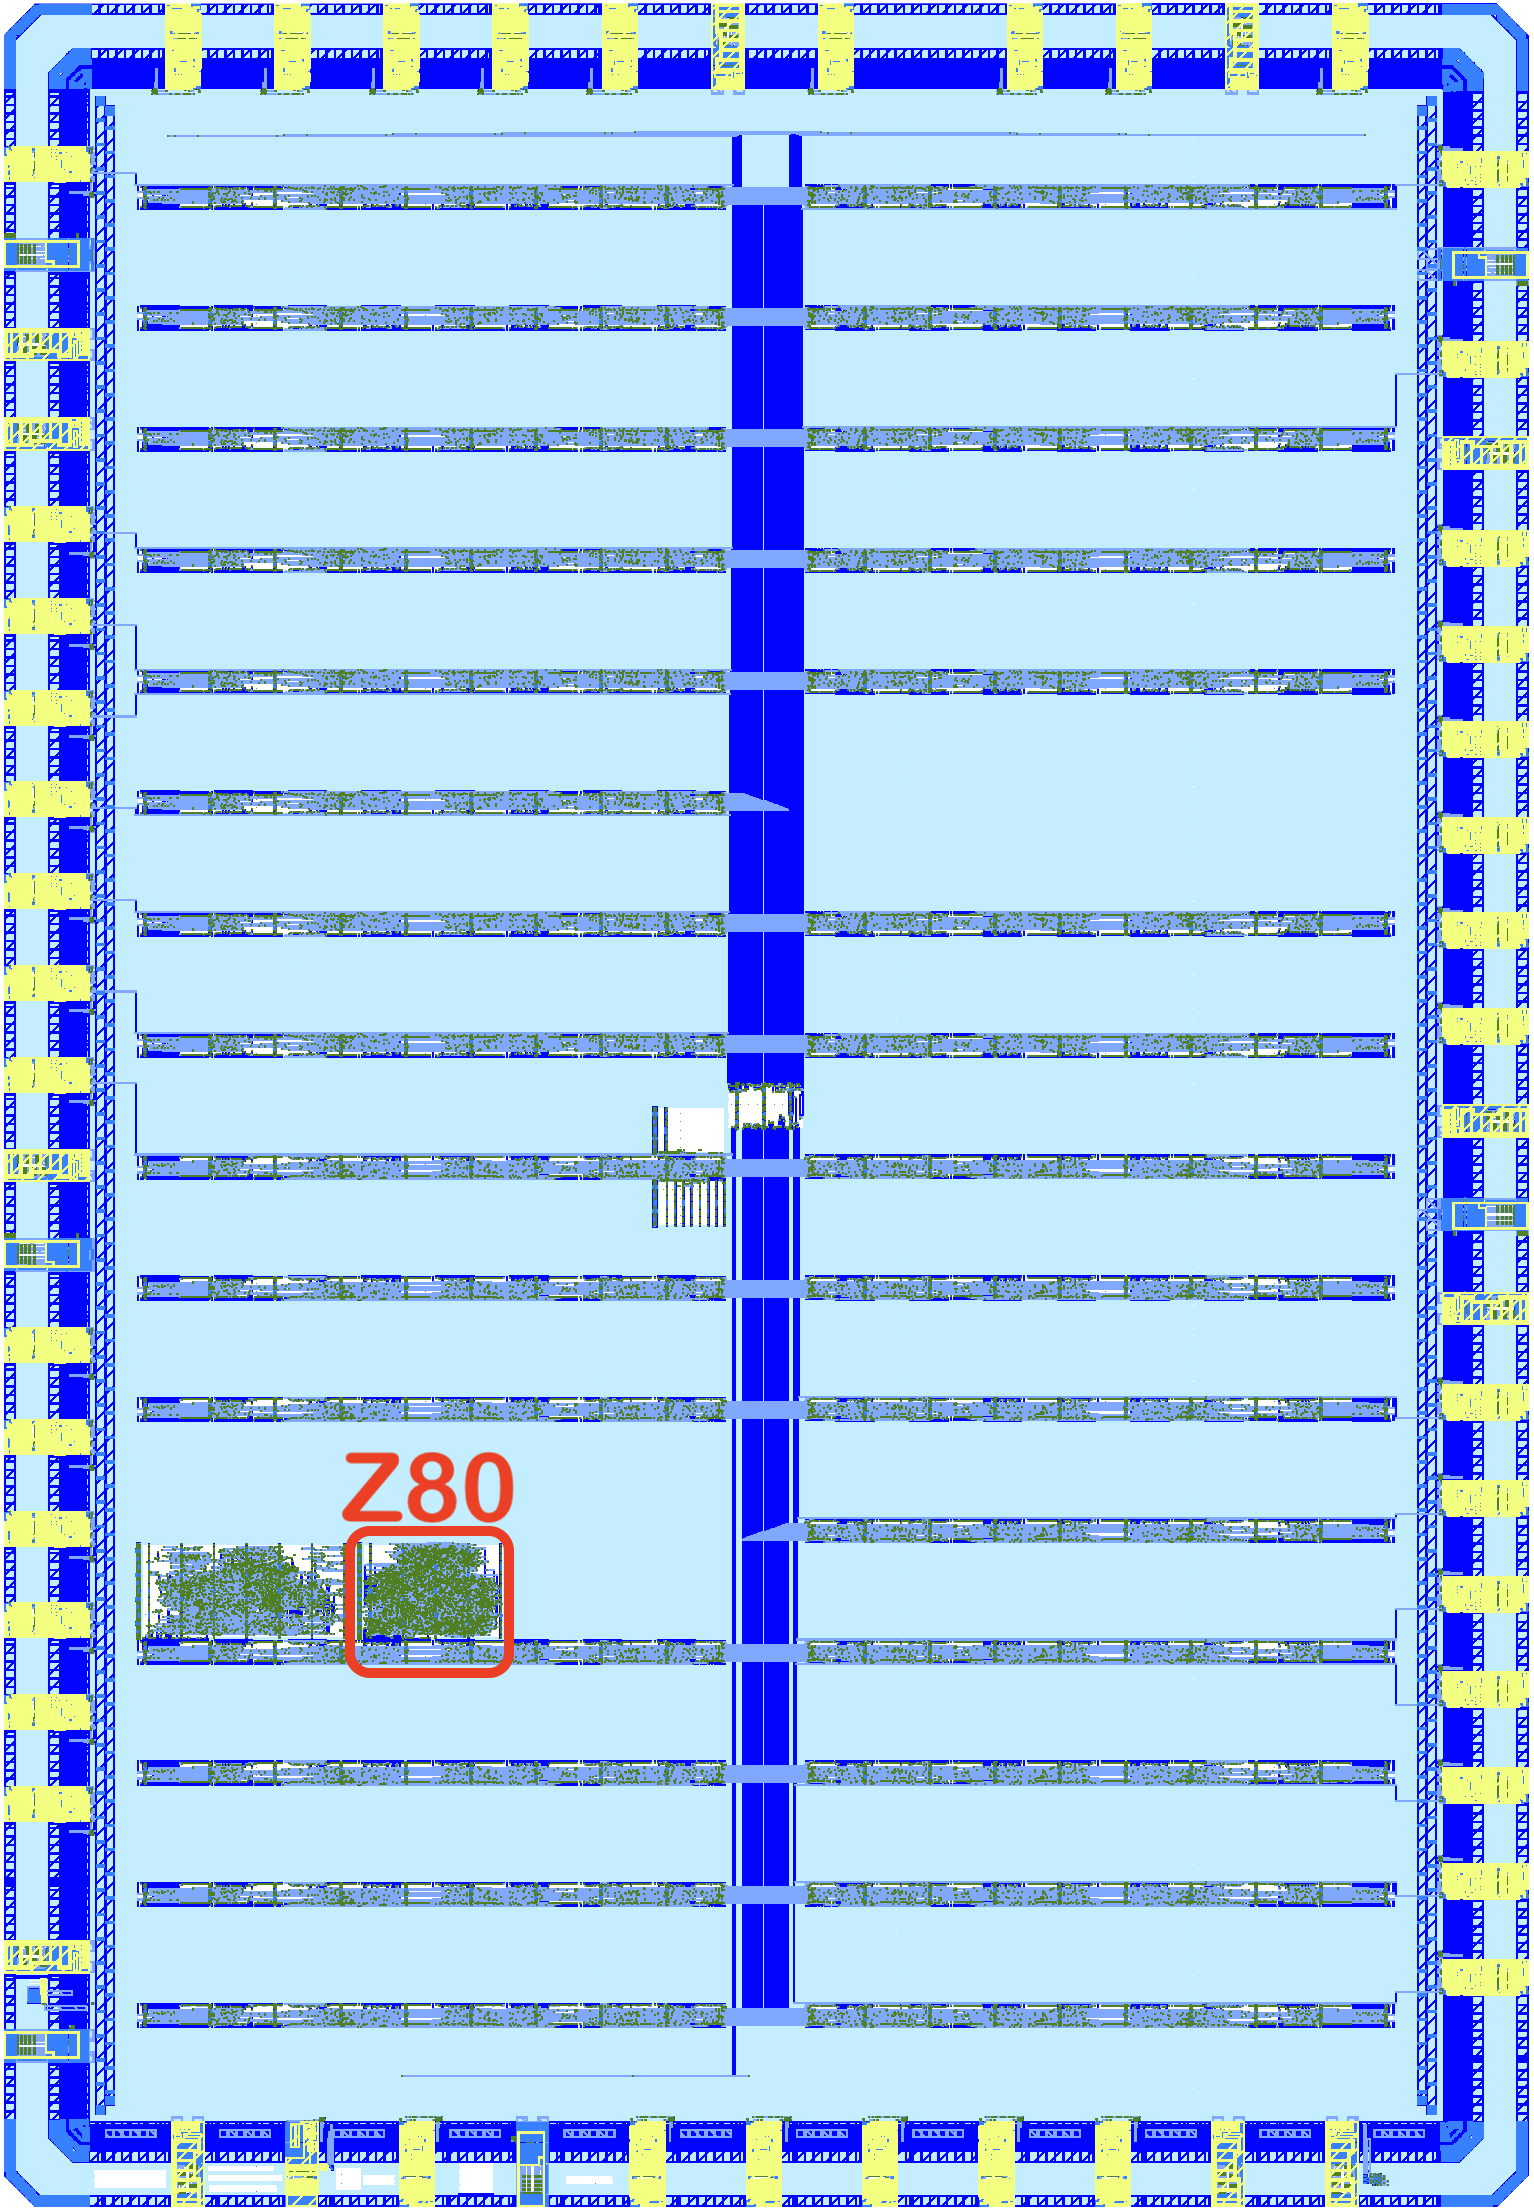  Legendary embedded chip, Z80 will open source soon